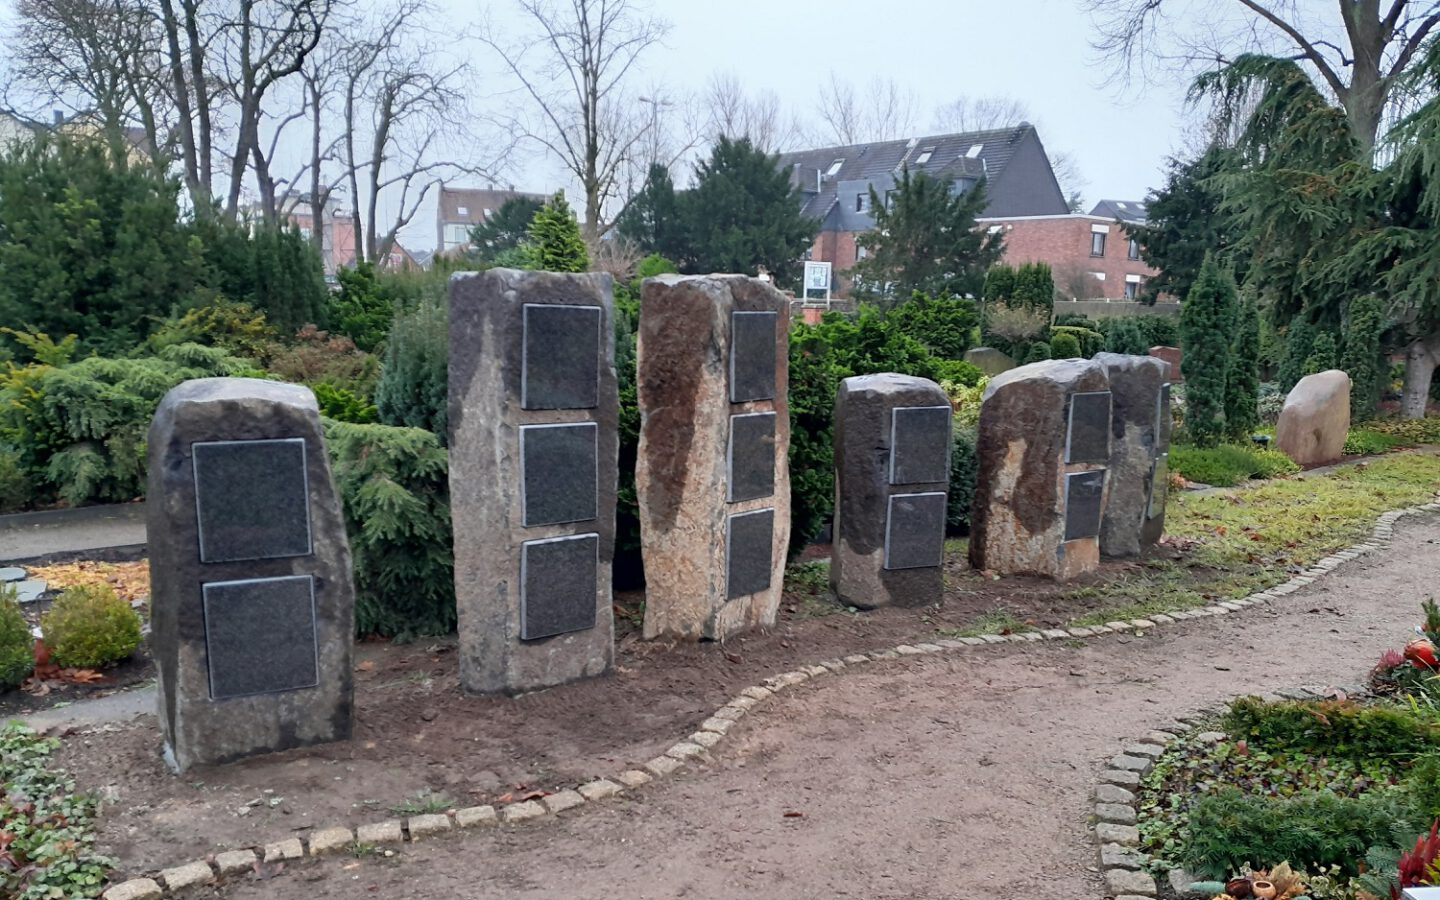 Weitere Mini-Kolumbarien auf dem Cranger Friedhof